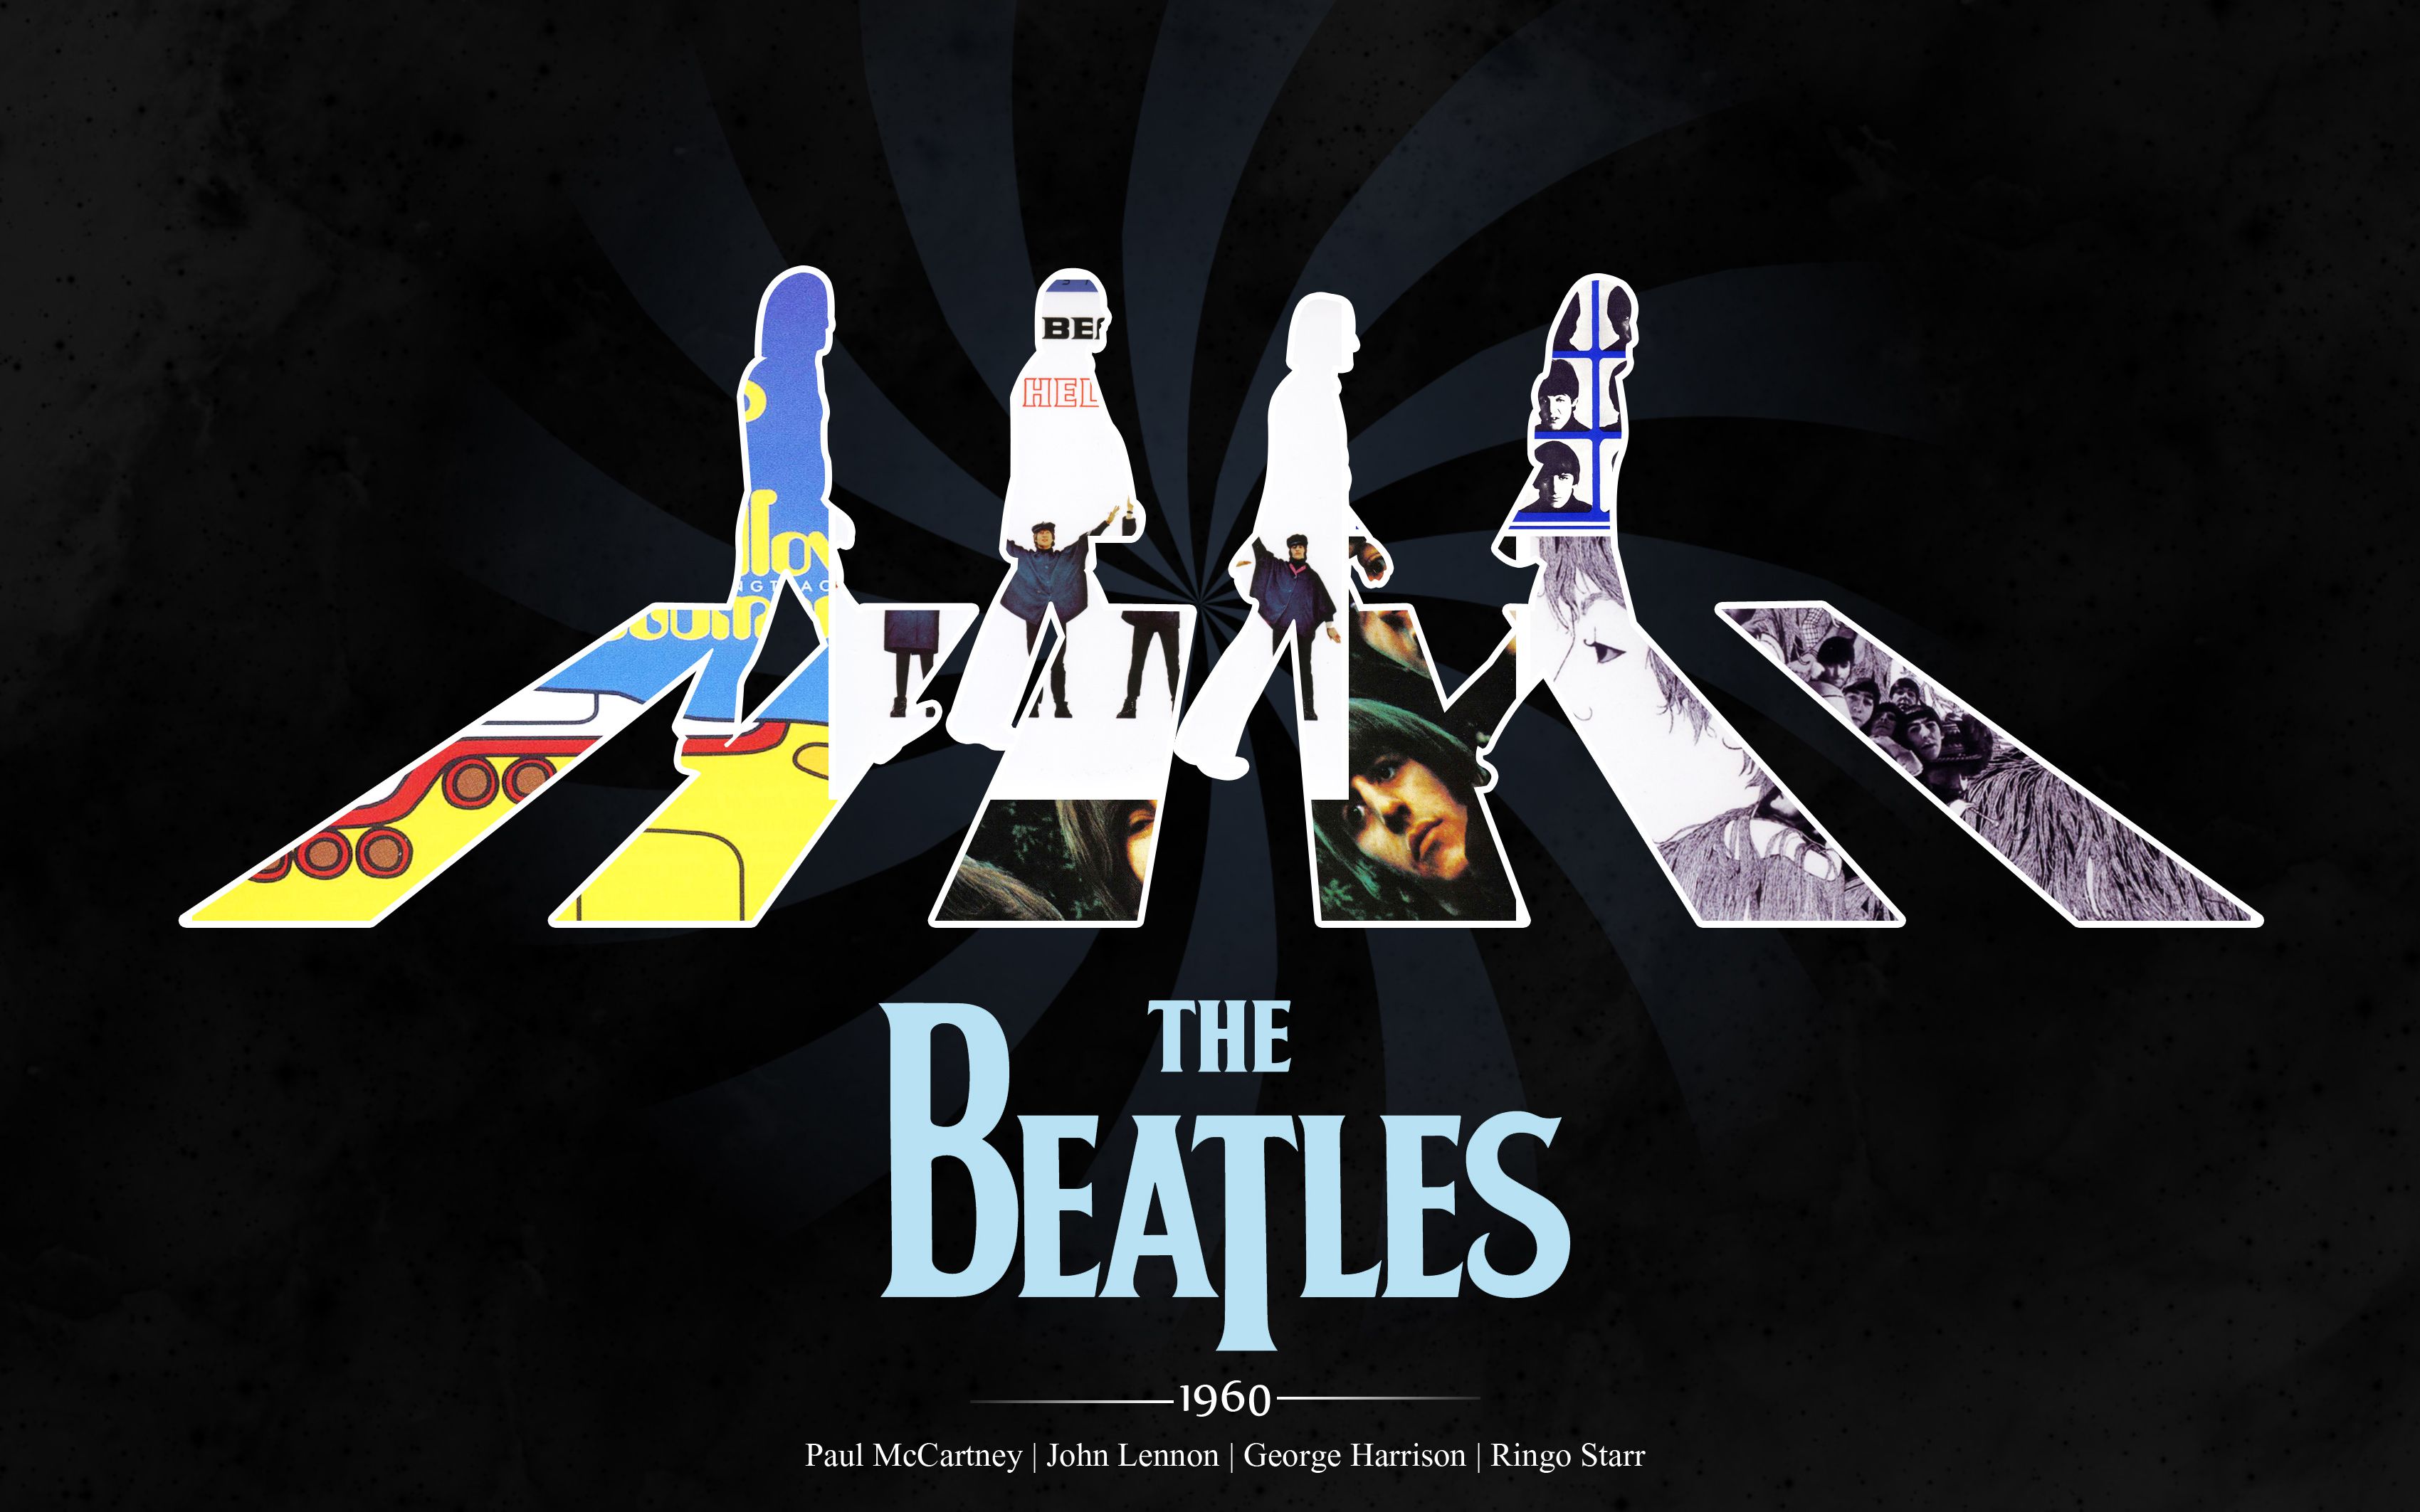 The Beatles 4K /the Beatles 4k 2096 Beatles, Guitars, The. Beatles Wallpaper, Beatles Poster, The Beatles